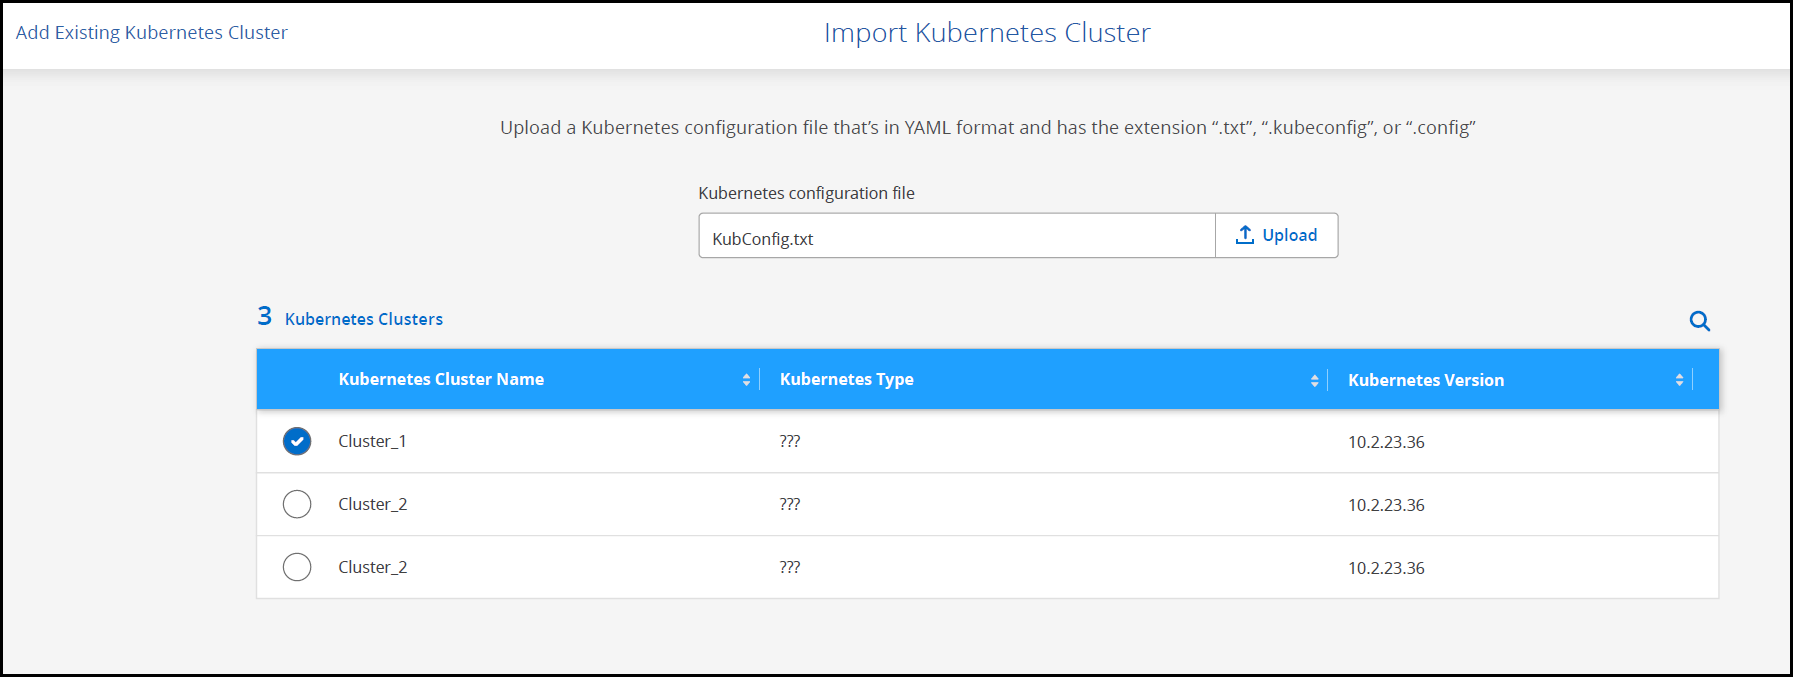 Una schermata della pagina di importazione dei cluster Kubernetes con il file di configurazione e la tabella dei cluster disponibili.